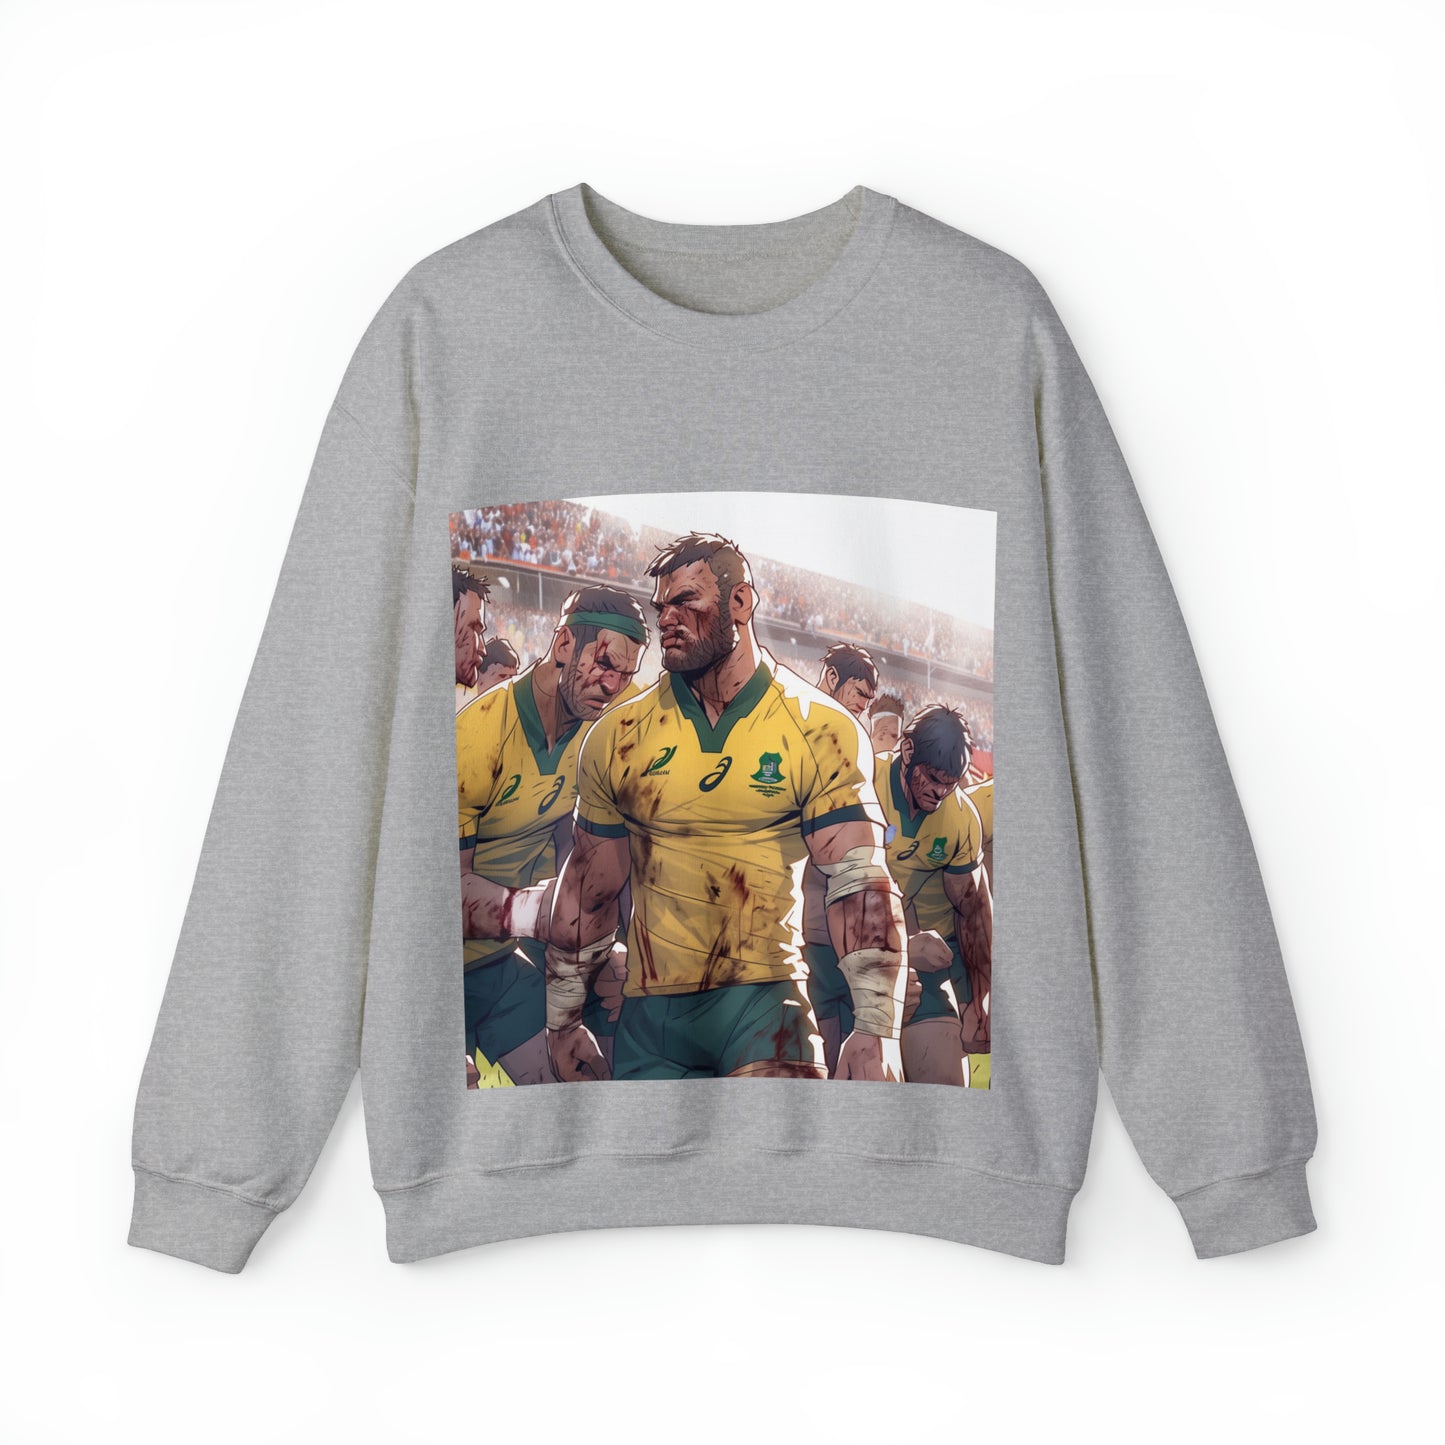 Aussie Aussie Aussie - light sweatshirt